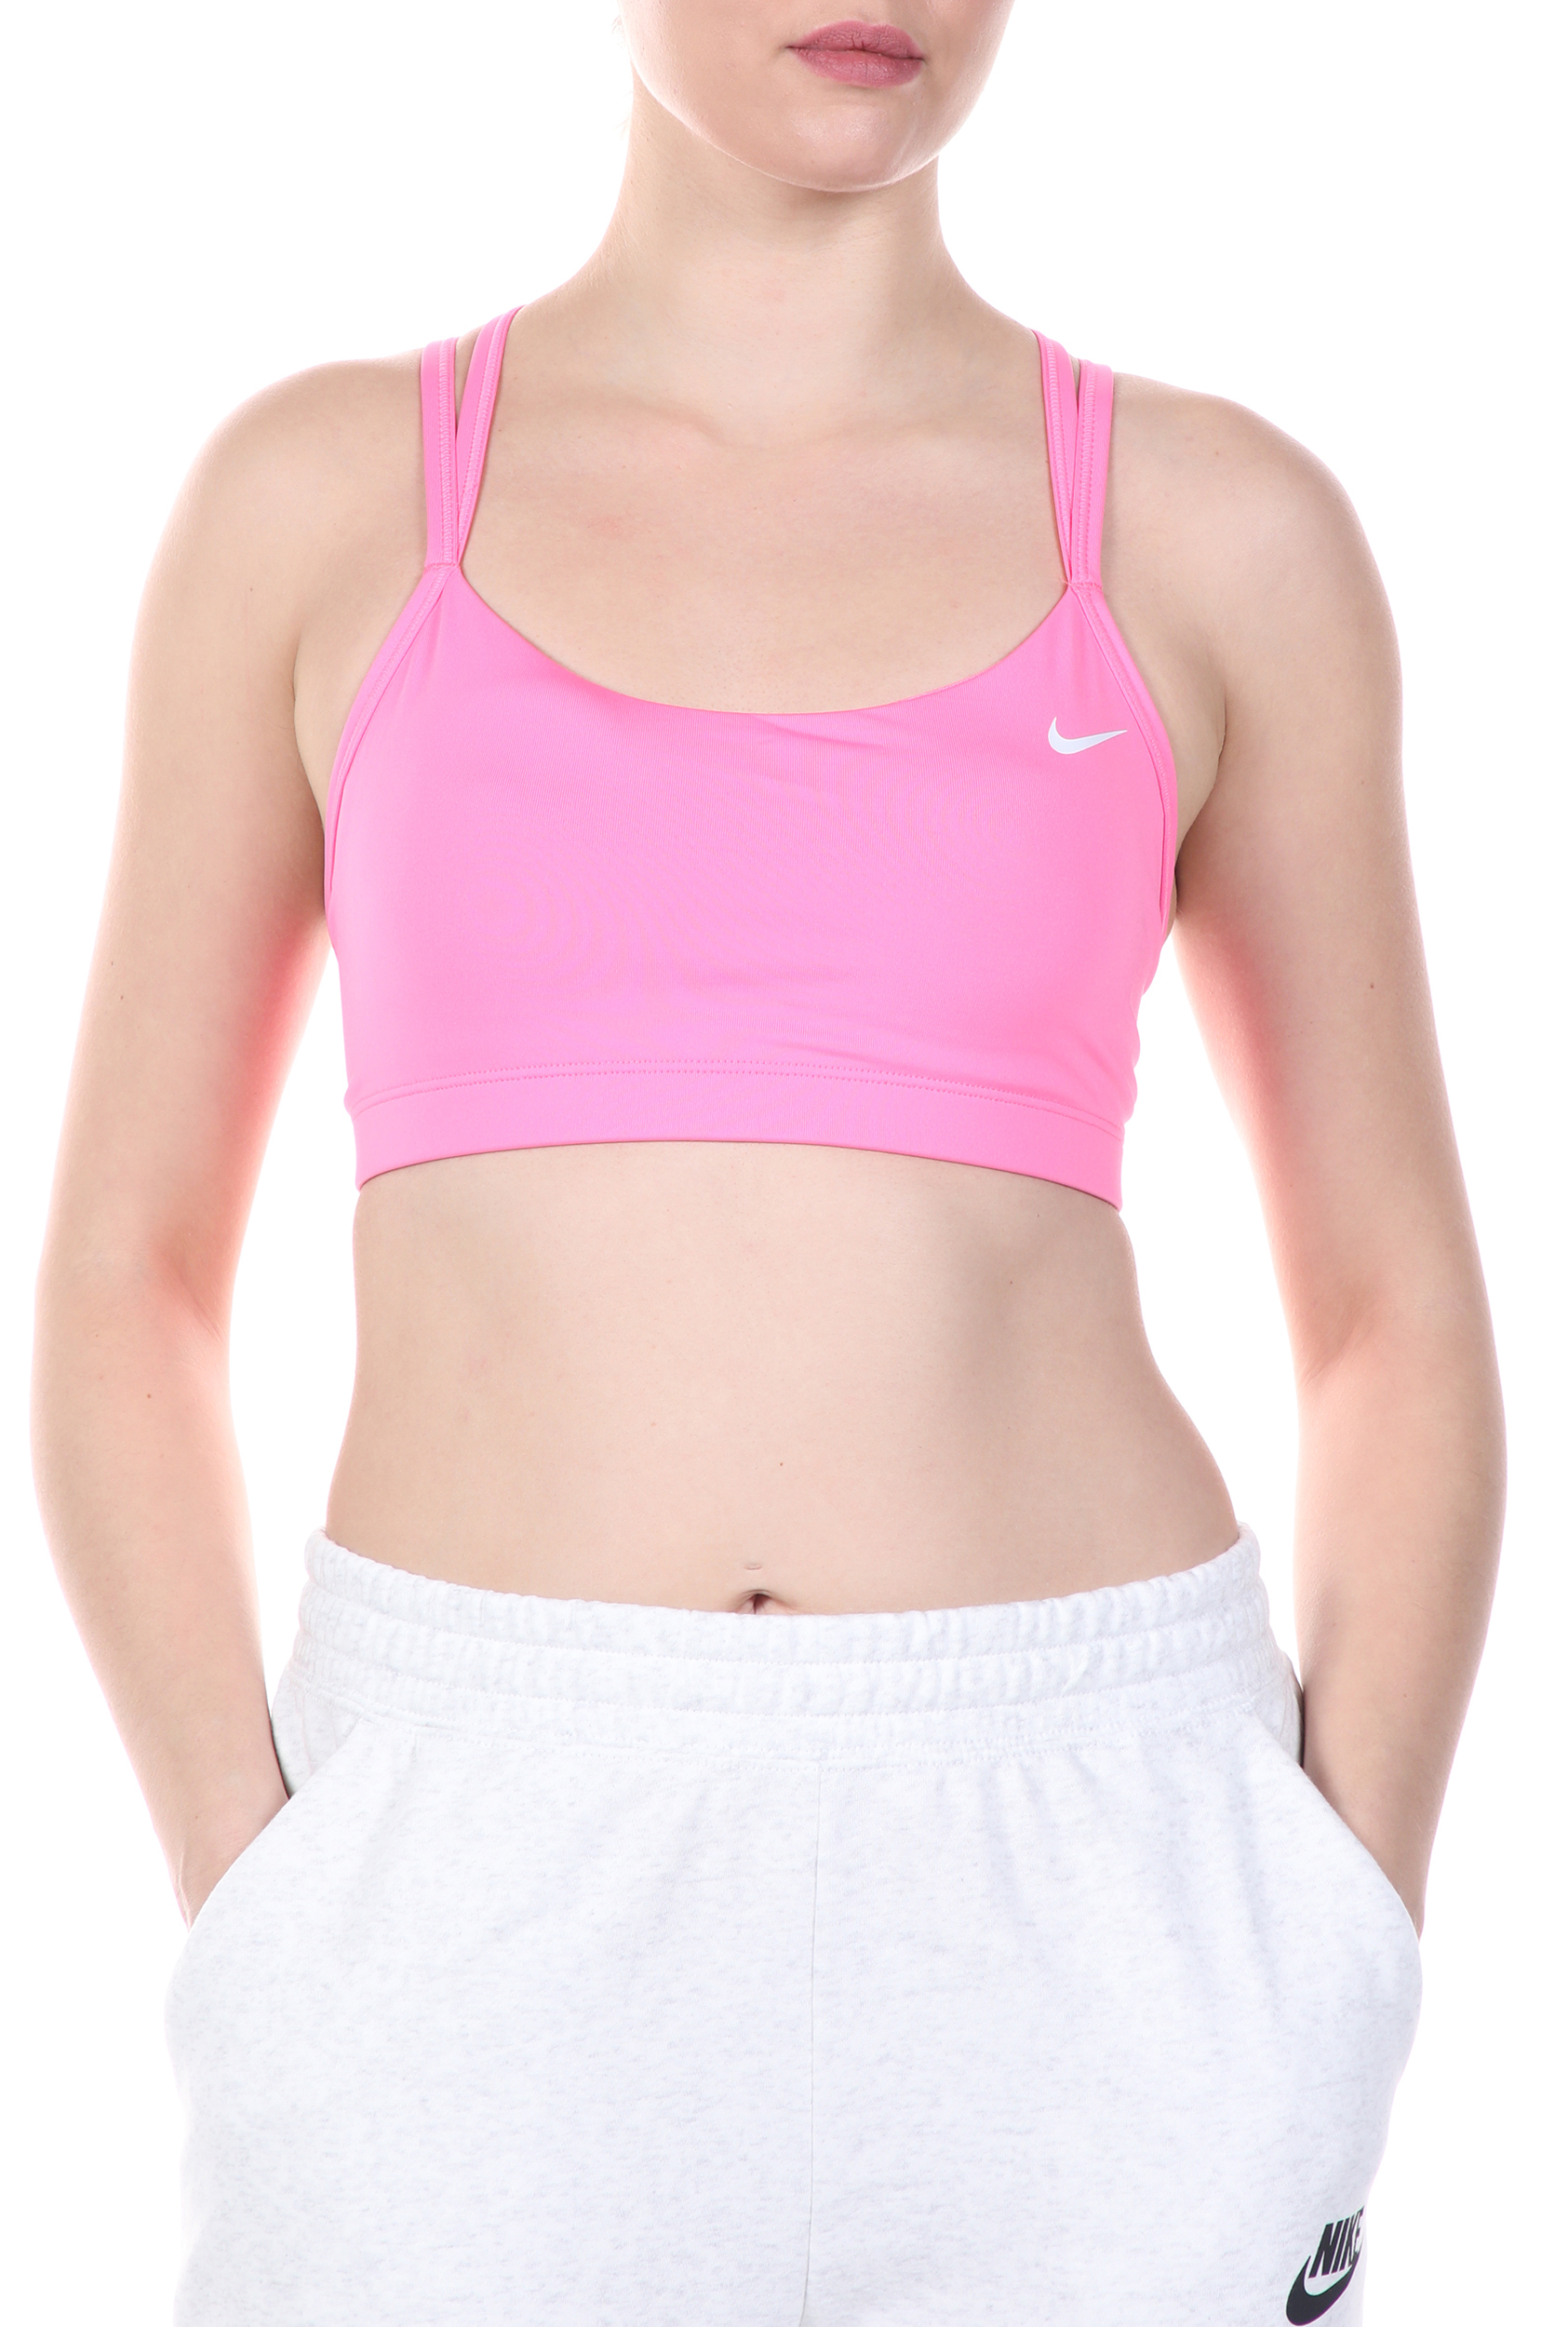 Γυναικεία/Ρούχα/Αθλητικά/Μπουστάκια NIKE - Γυναικείο αθλητικό μπουστάκι NIKE FAVORITES STRAPPY BRA ροζ